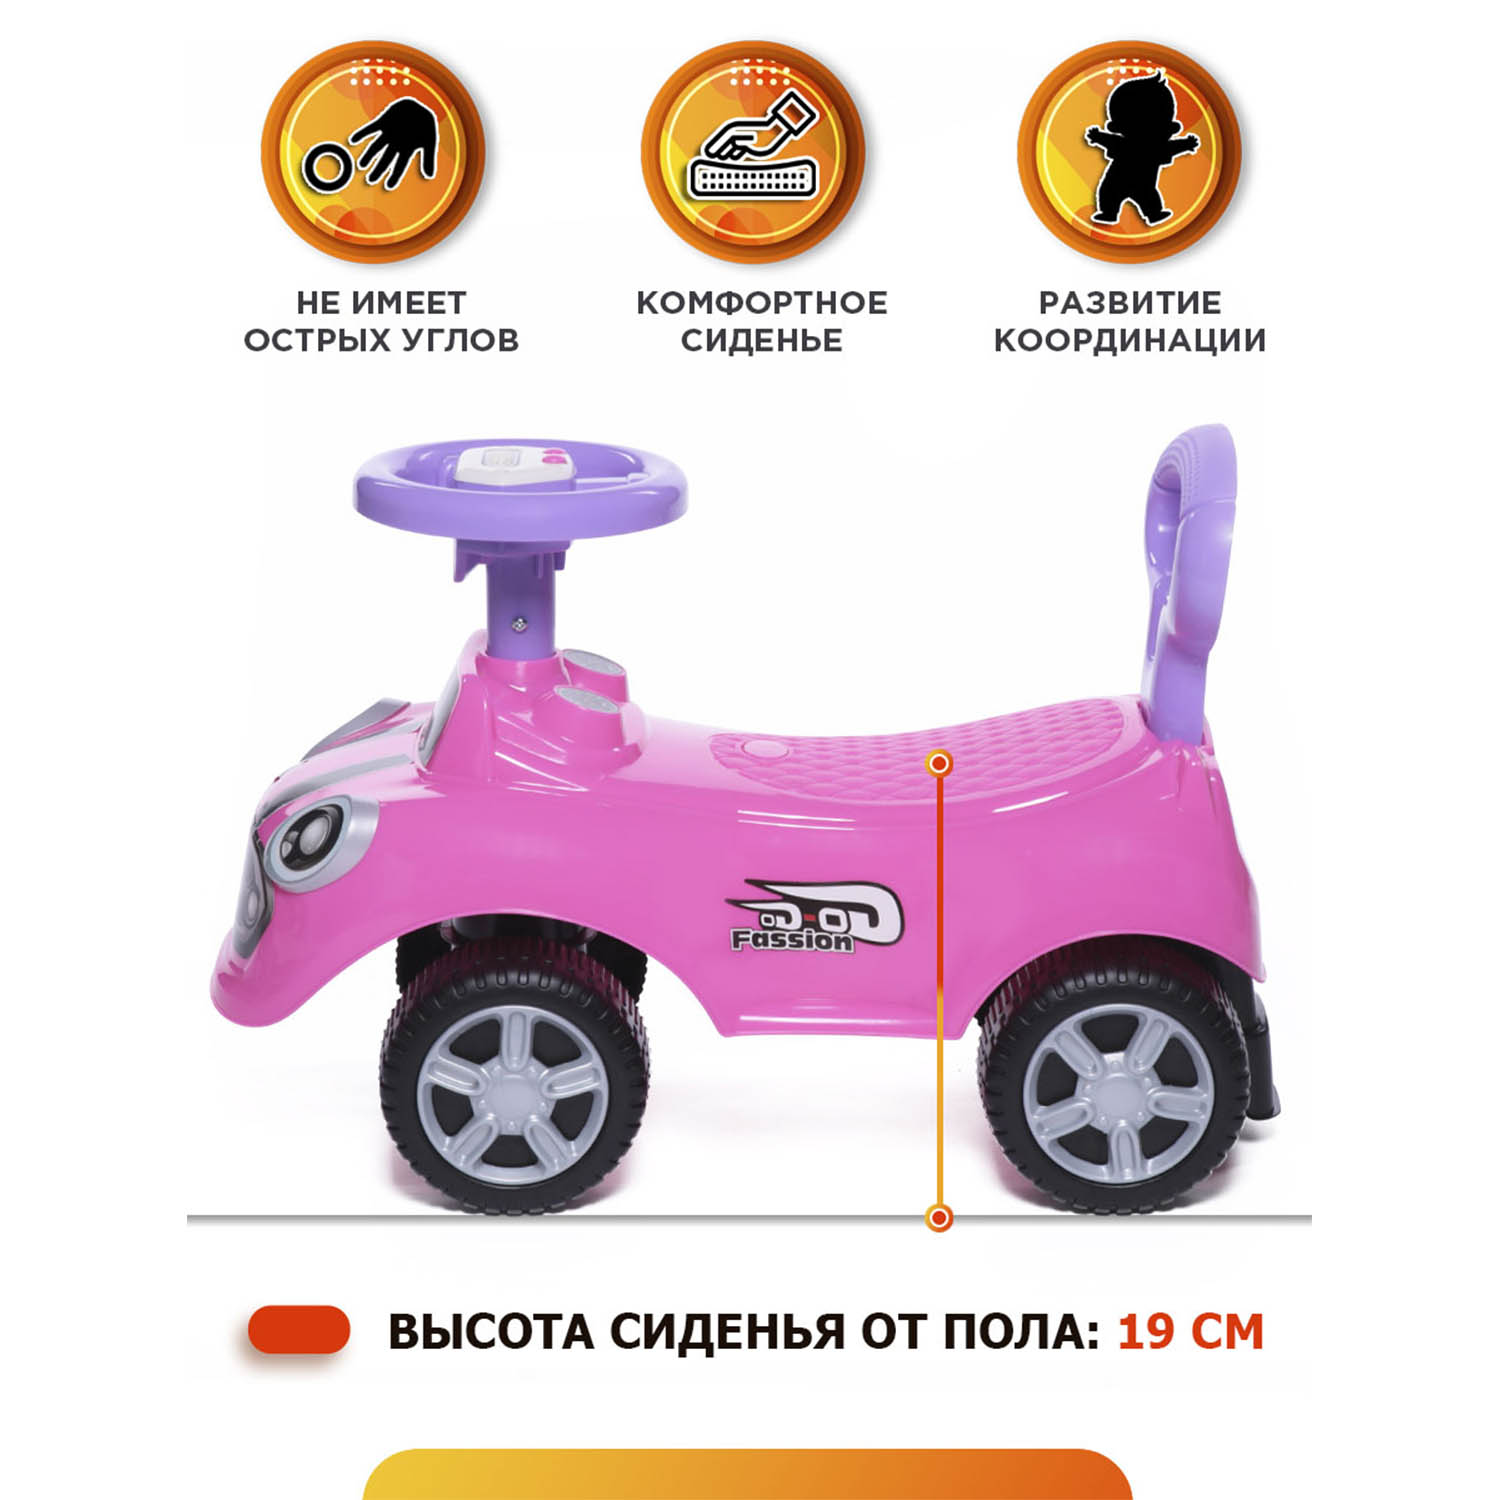 Каталка BabyCare Speedrunner музыкальный руль розовый - фото 3